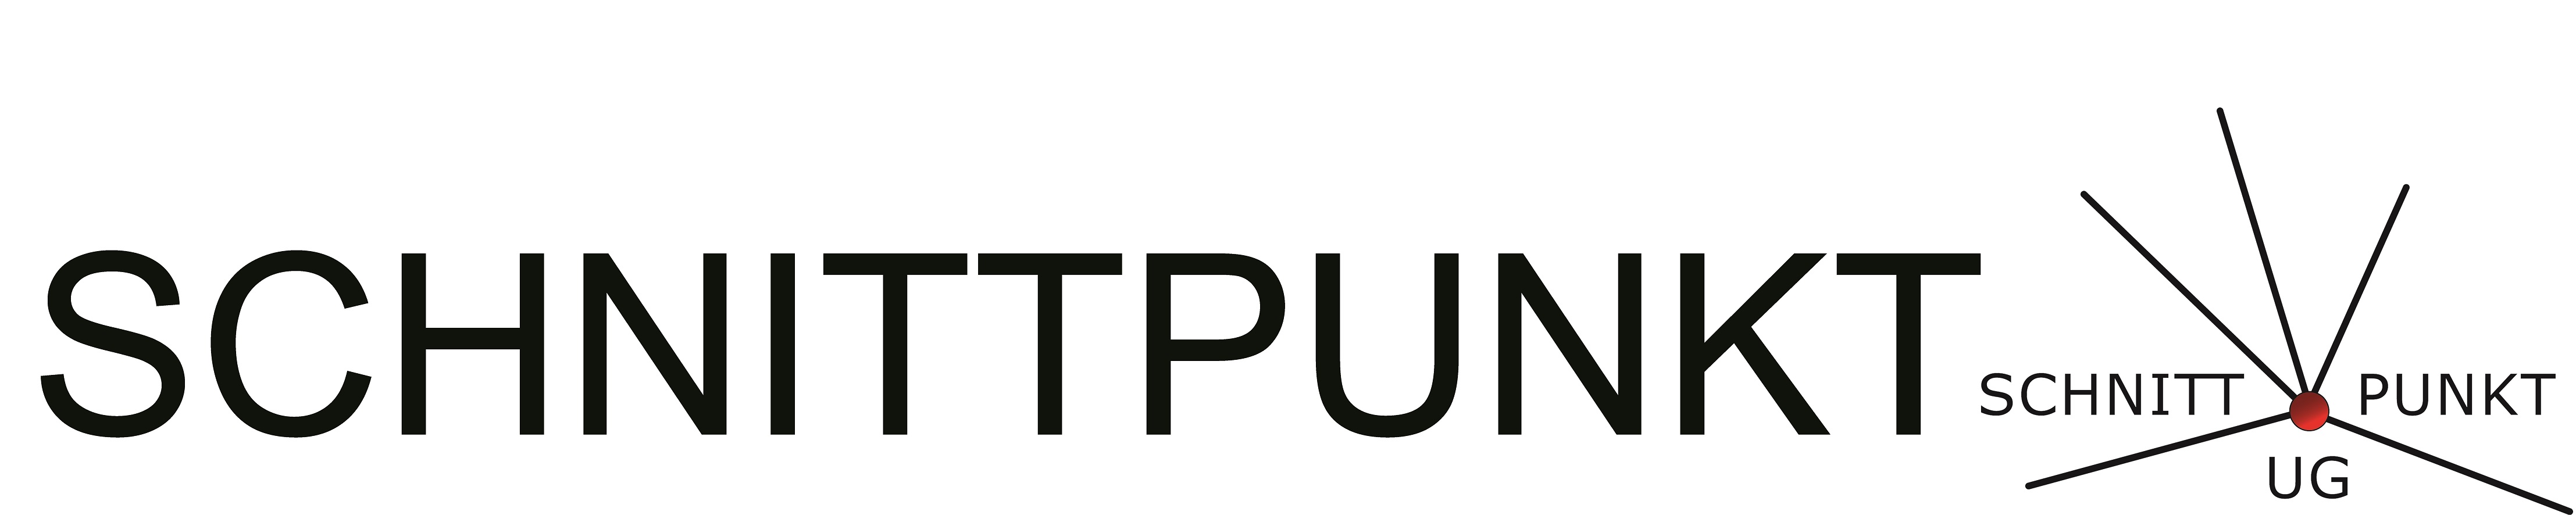 Logo Schnittpunkt - english